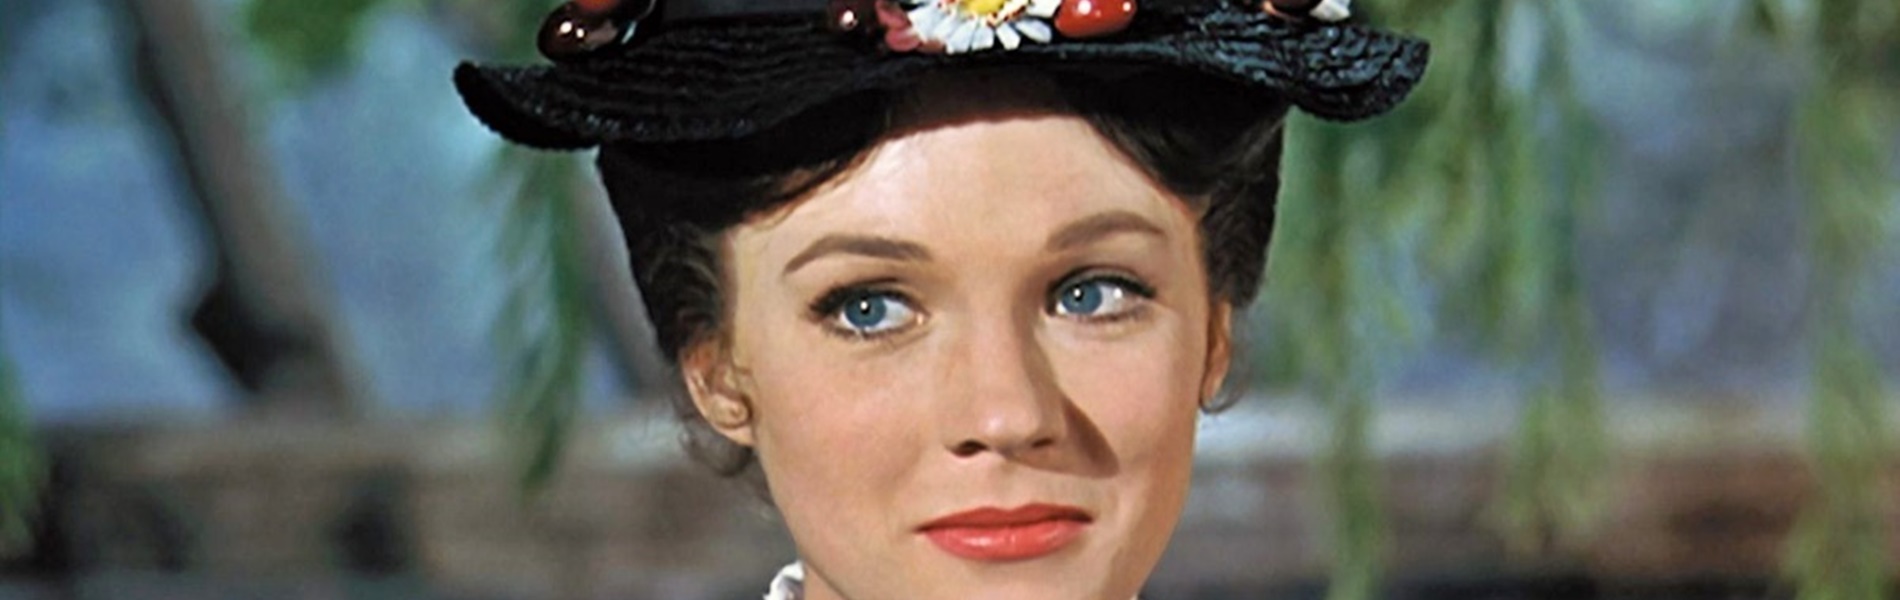 Már 88 éves a Mary Poppins ünnepelt sztárja – Julie Andrews a mai napig nagyon jól tartja magát